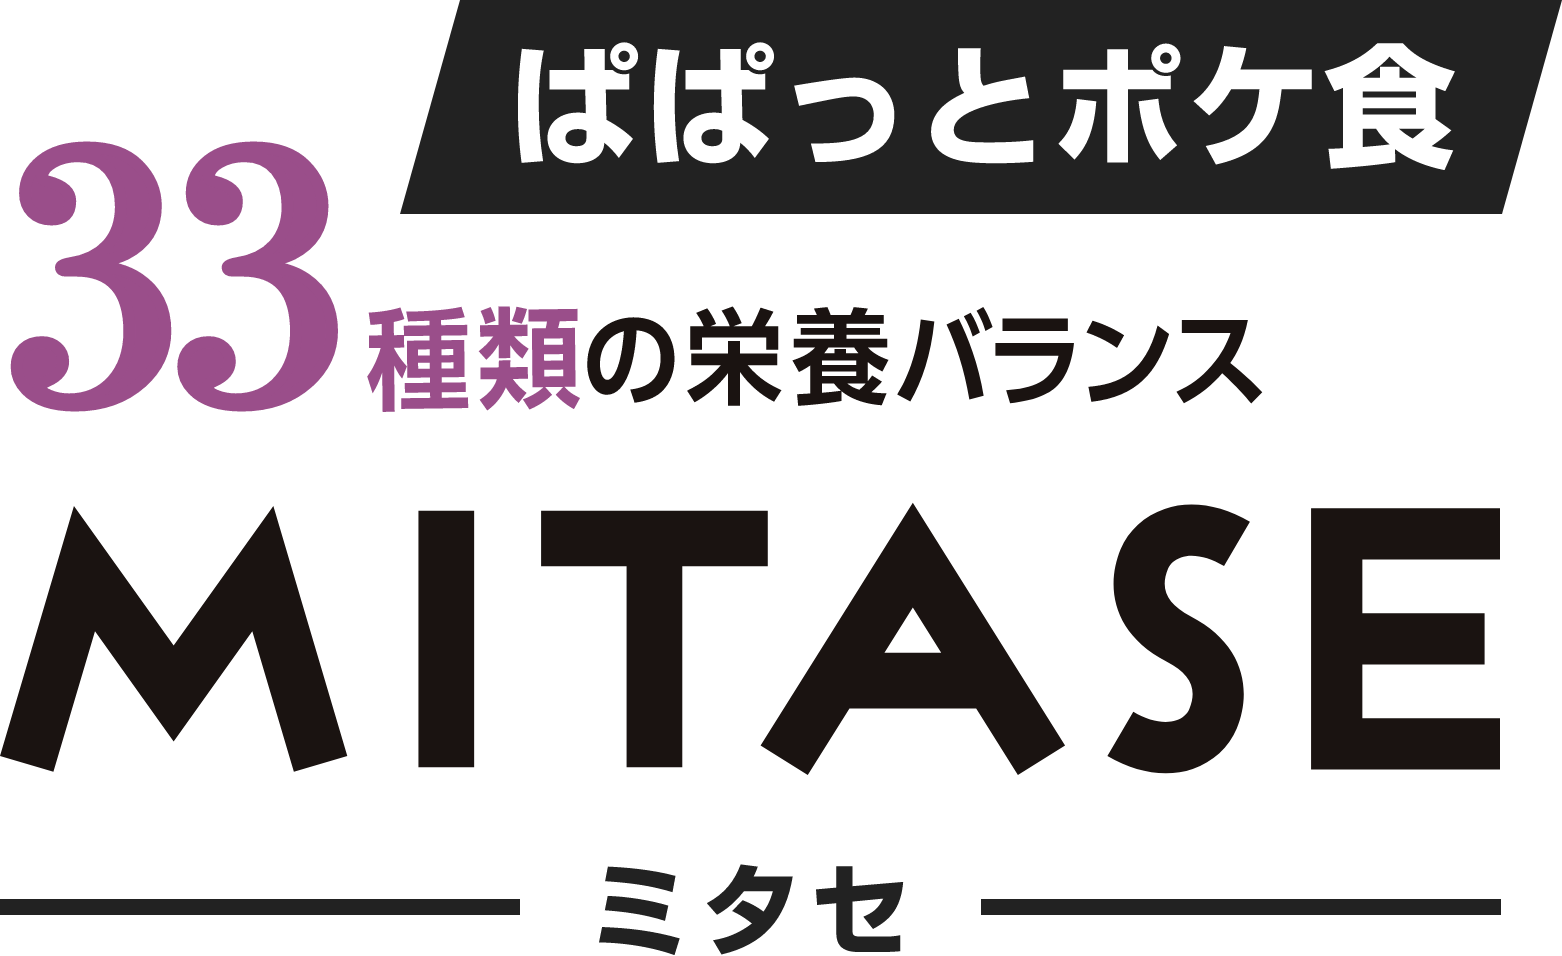 MITASE ミタセ ぱぱっとポケ食33種類の栄養バランス